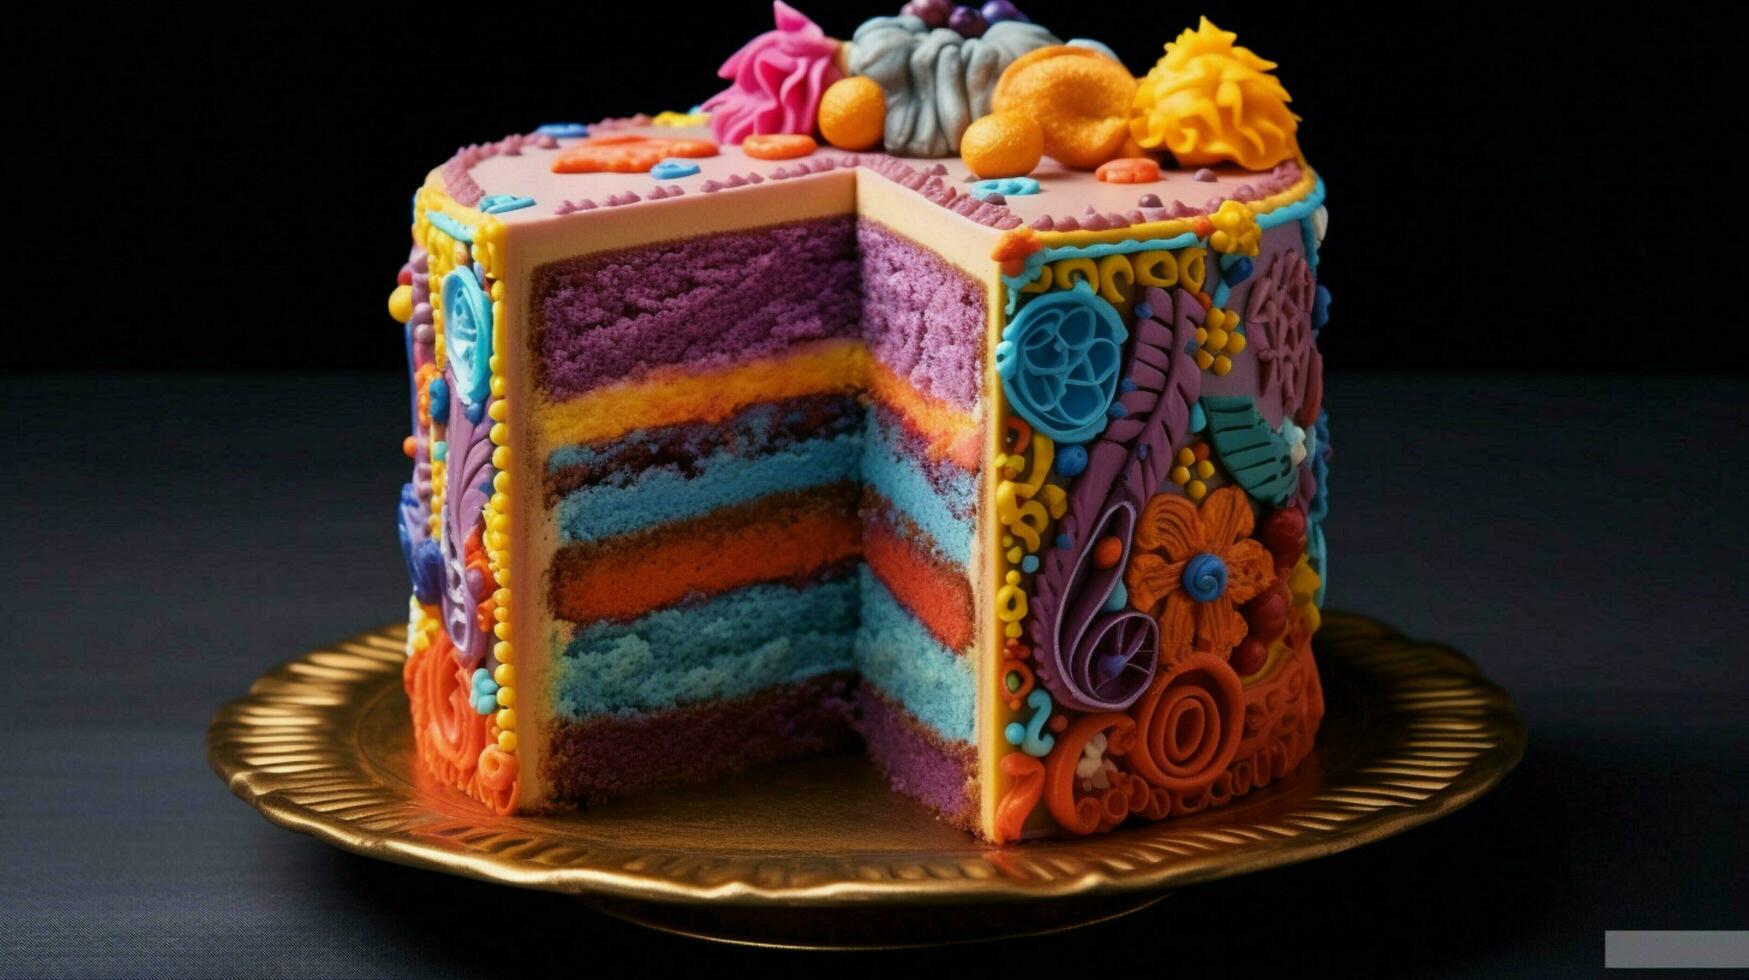 Scheibe von Kuchen dekoriert mit beschwingt Farben foto